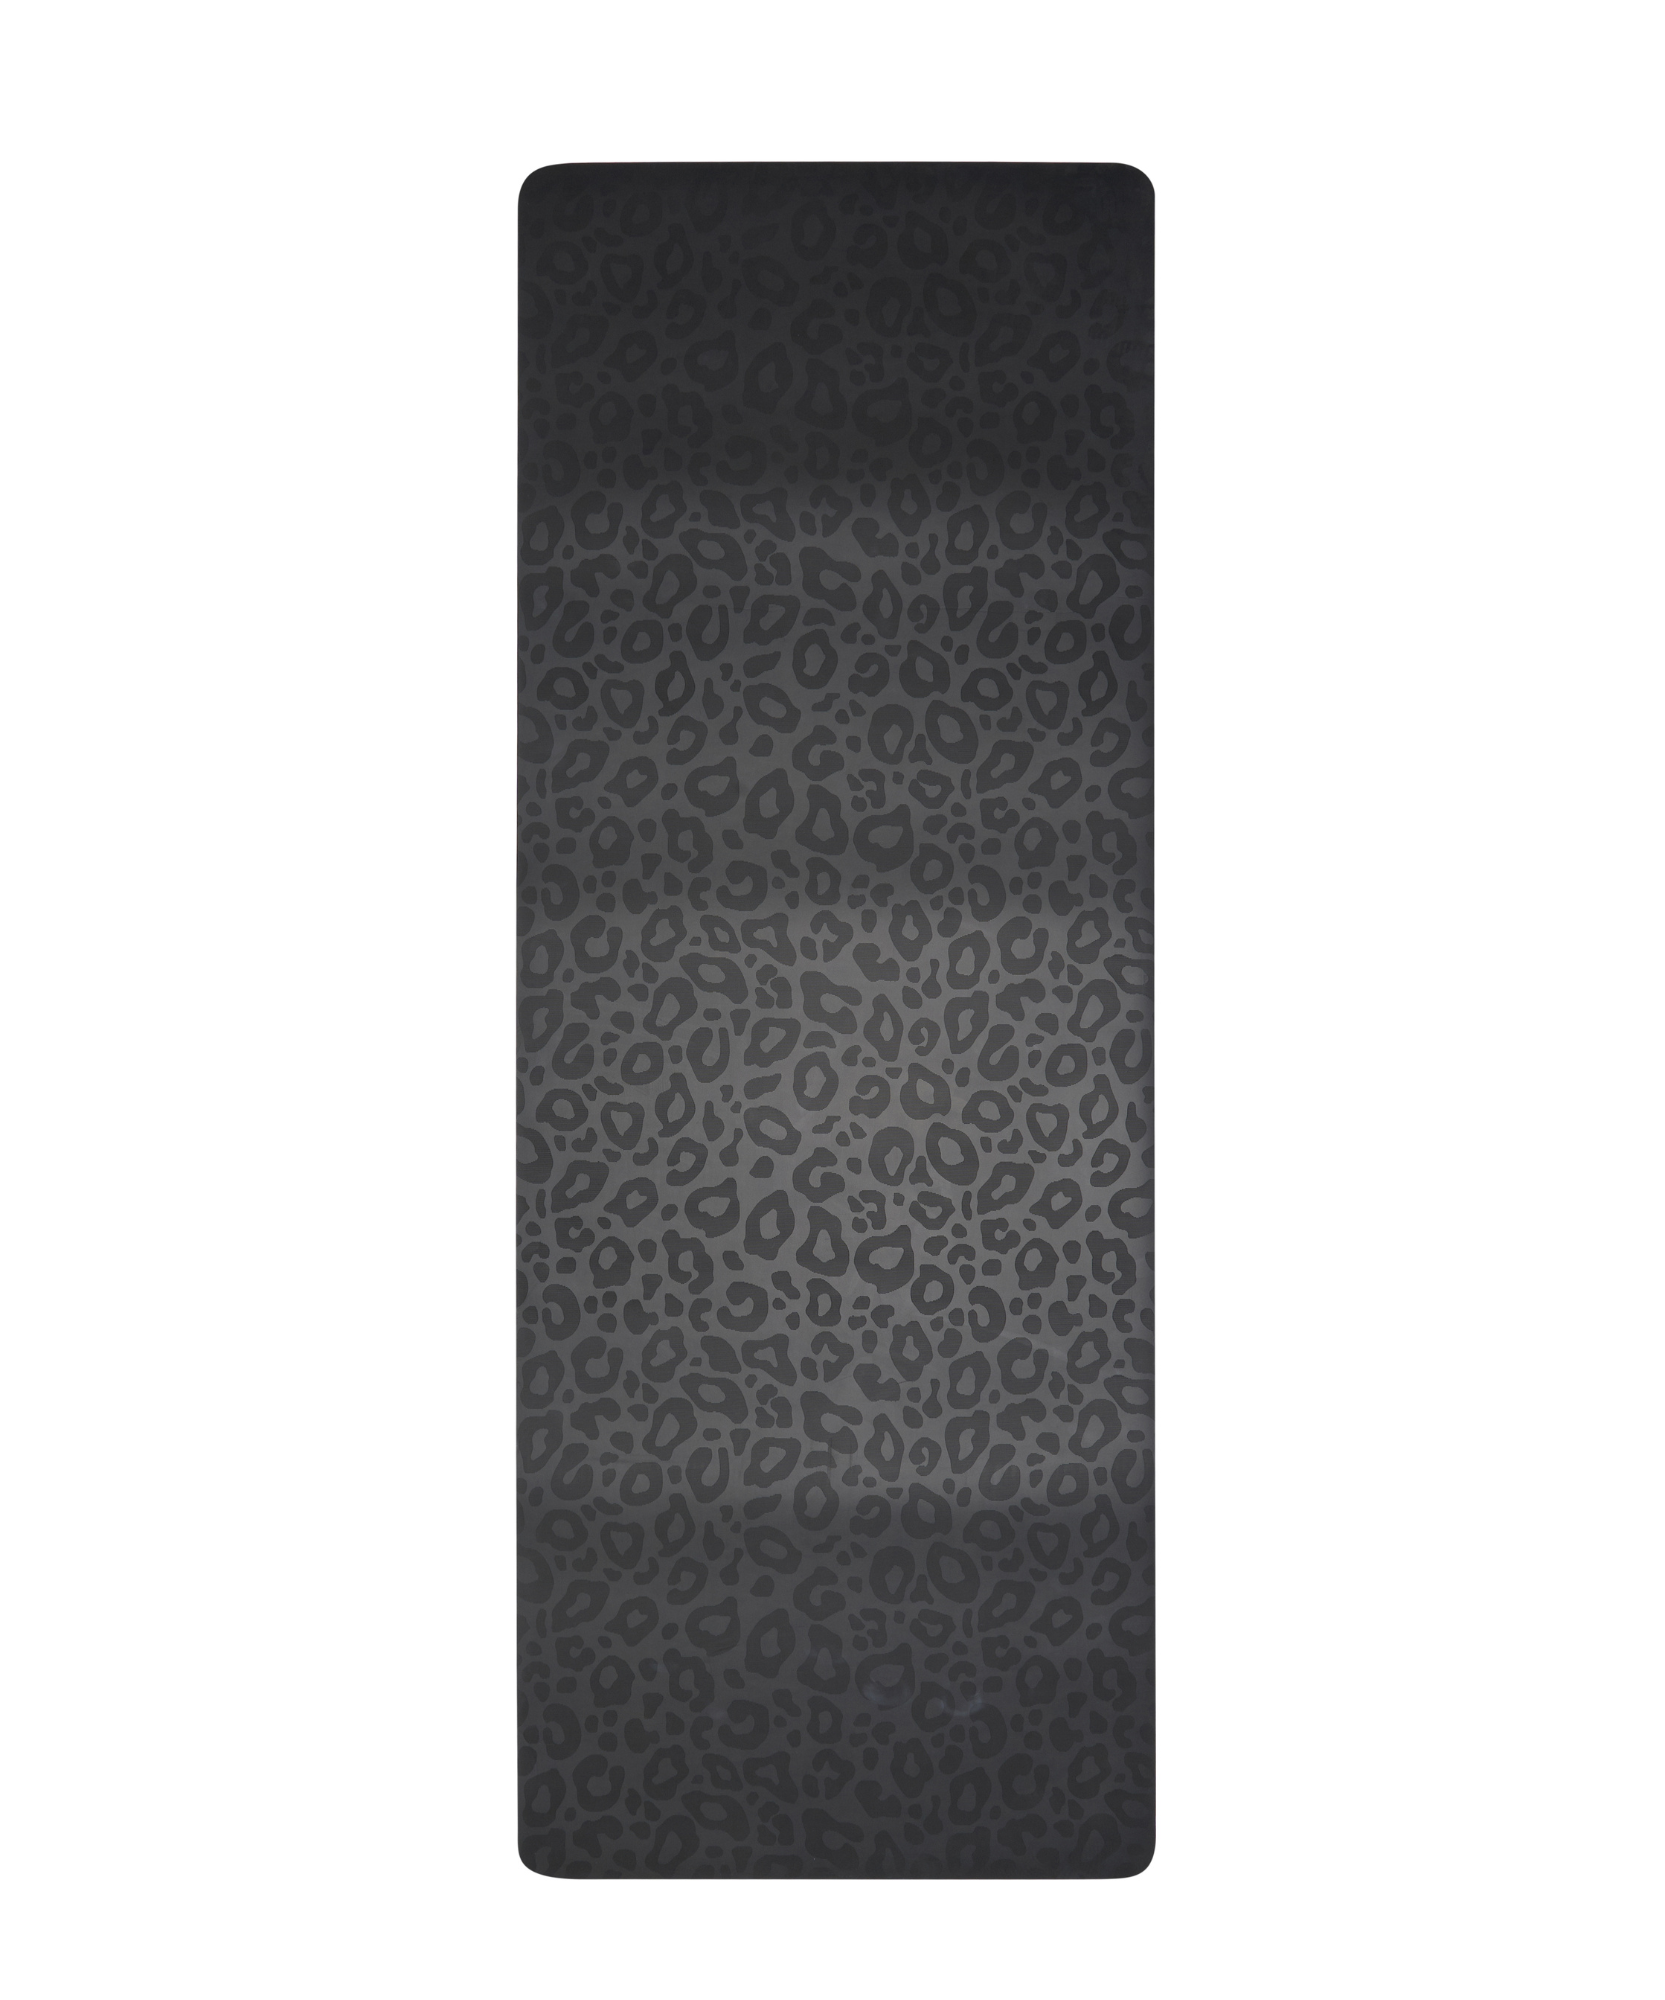 Purpose Printed Yoga Mat - Black Metallic (6MM) –